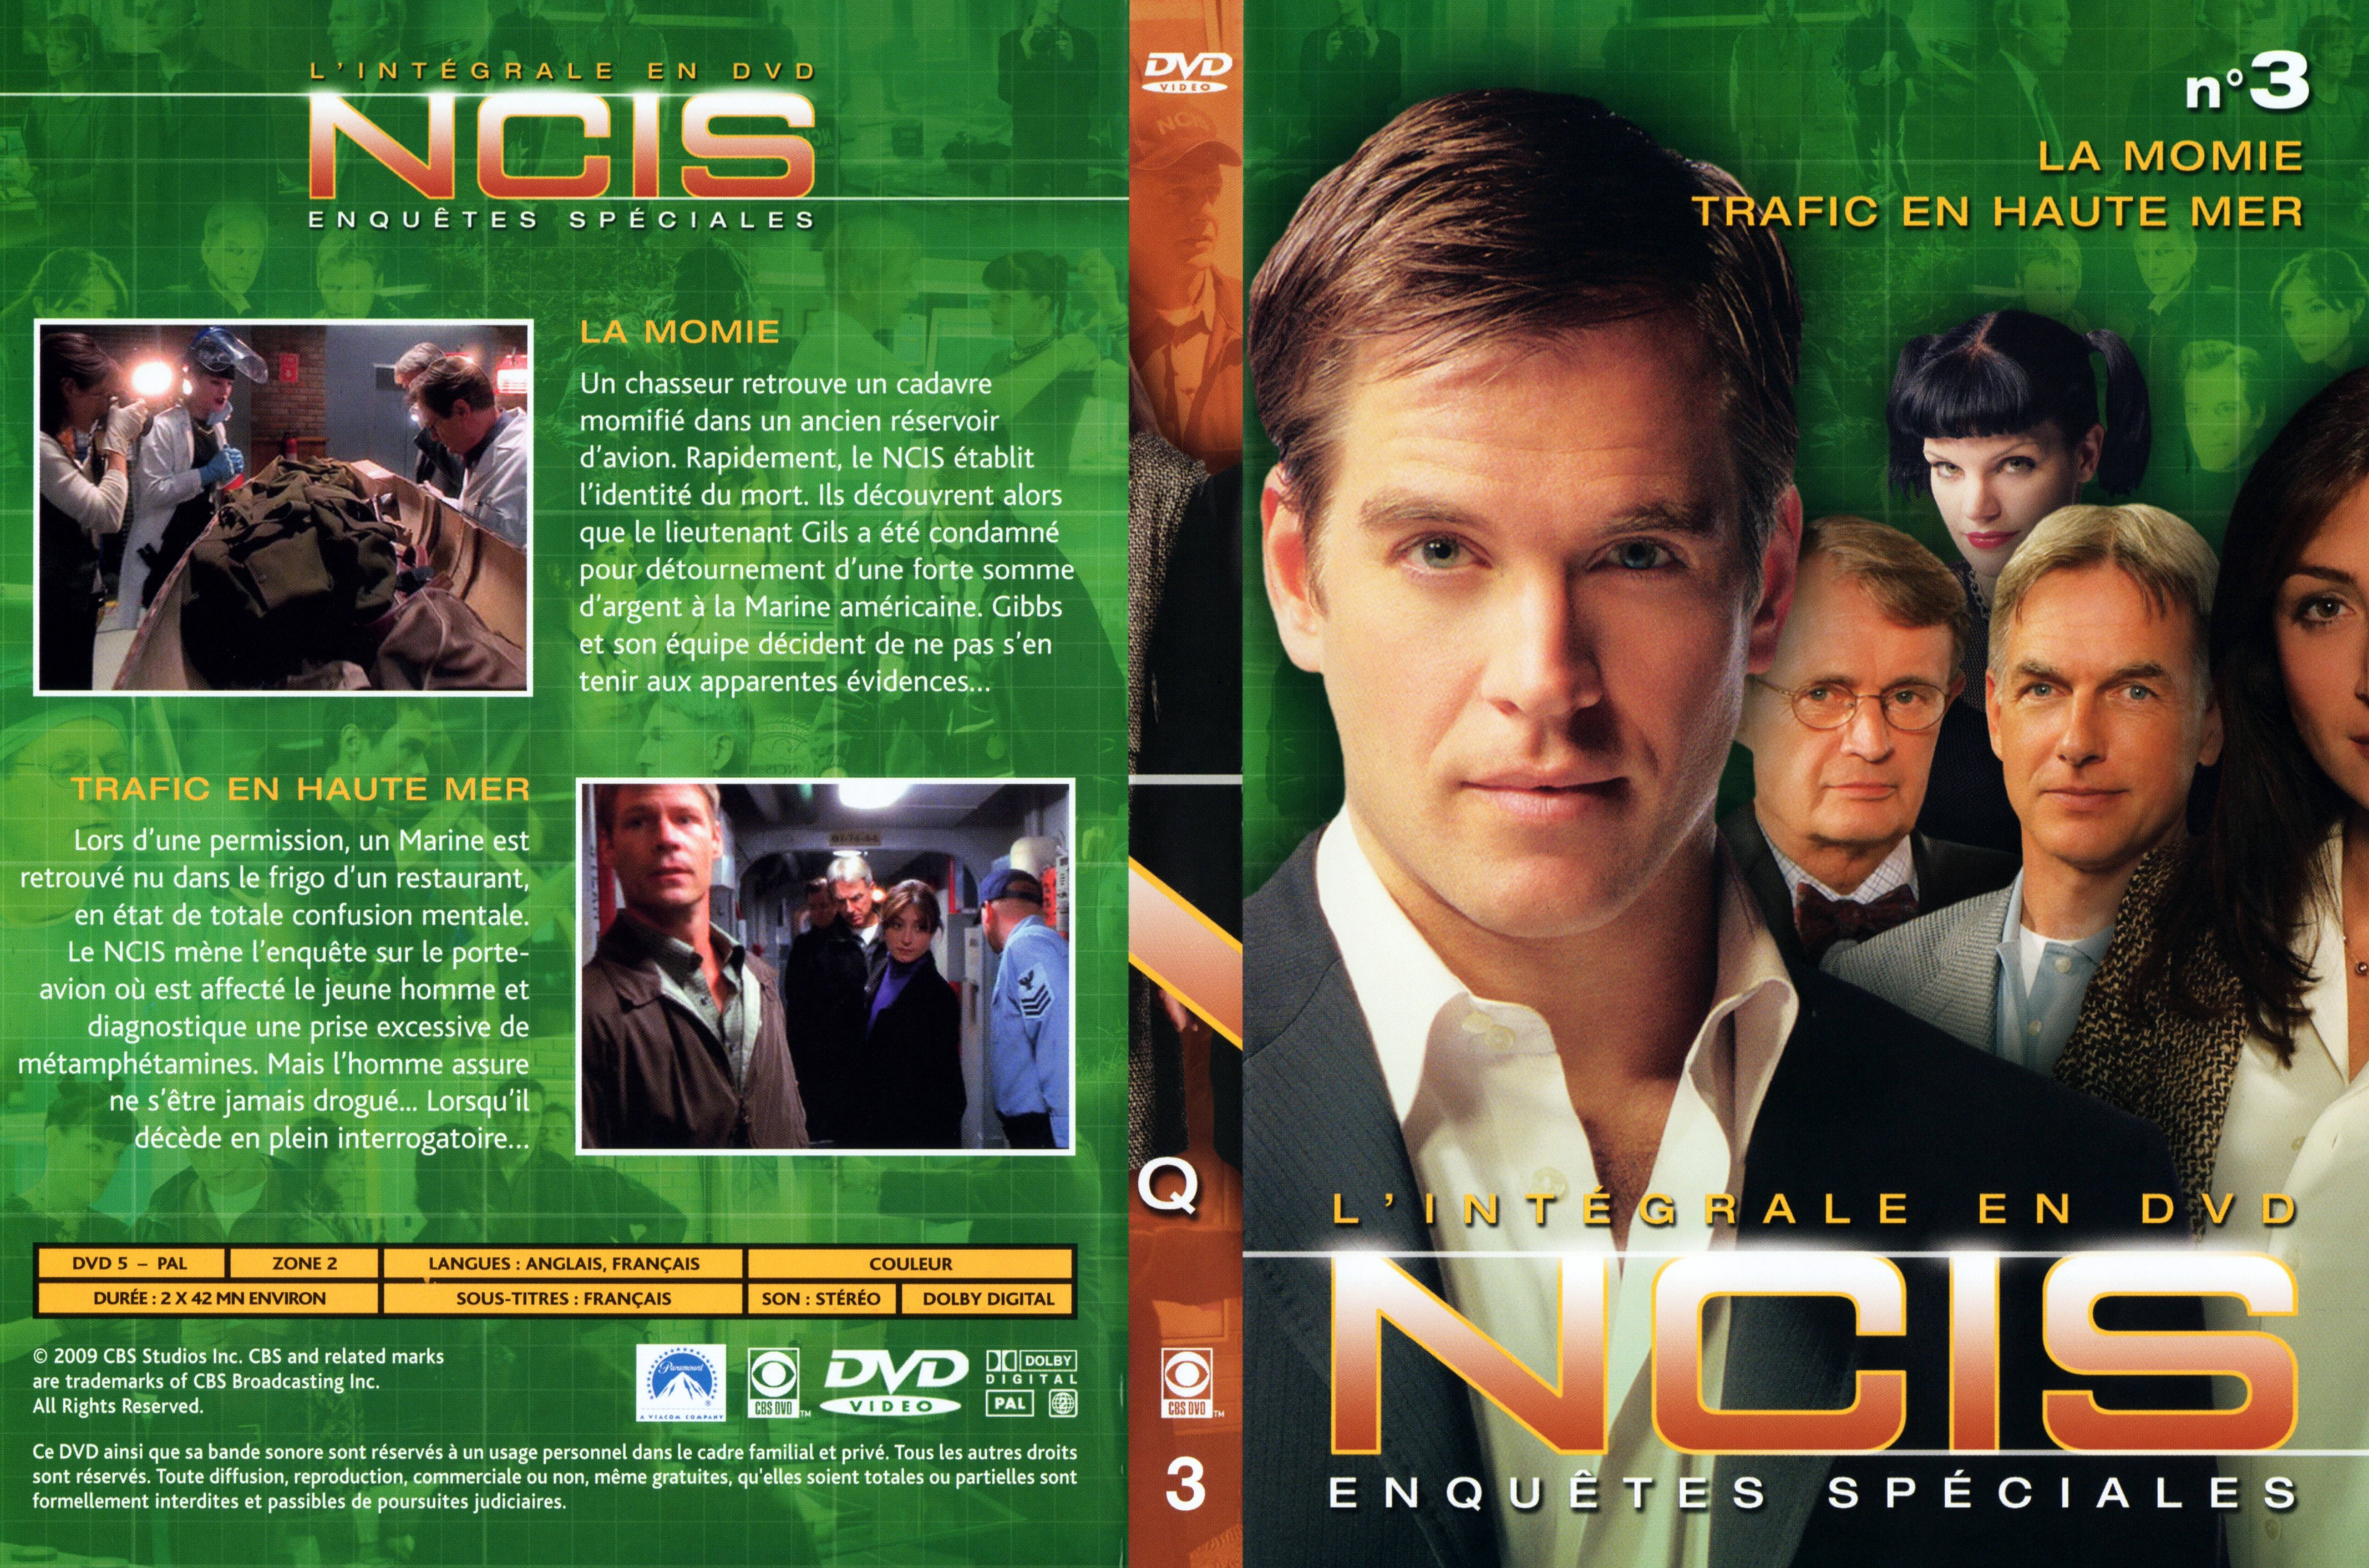 Jaquette DVD NCIS Integrale DVD 3